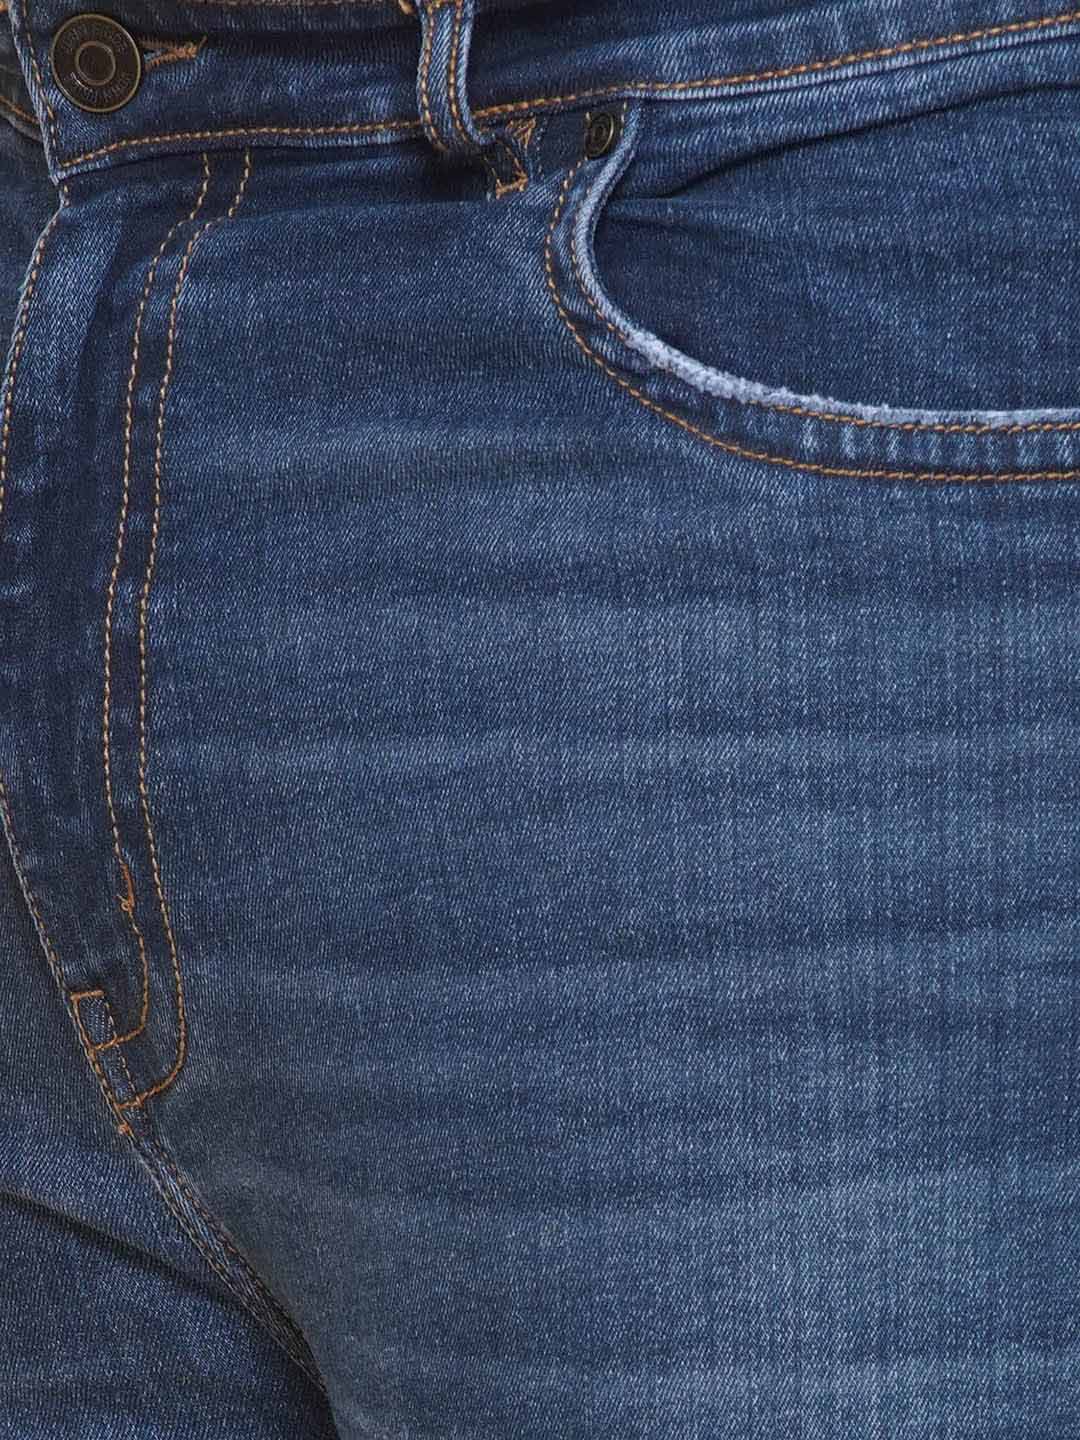 bottomwear/jeans/JPJ12422/jpj12422-2.jpg